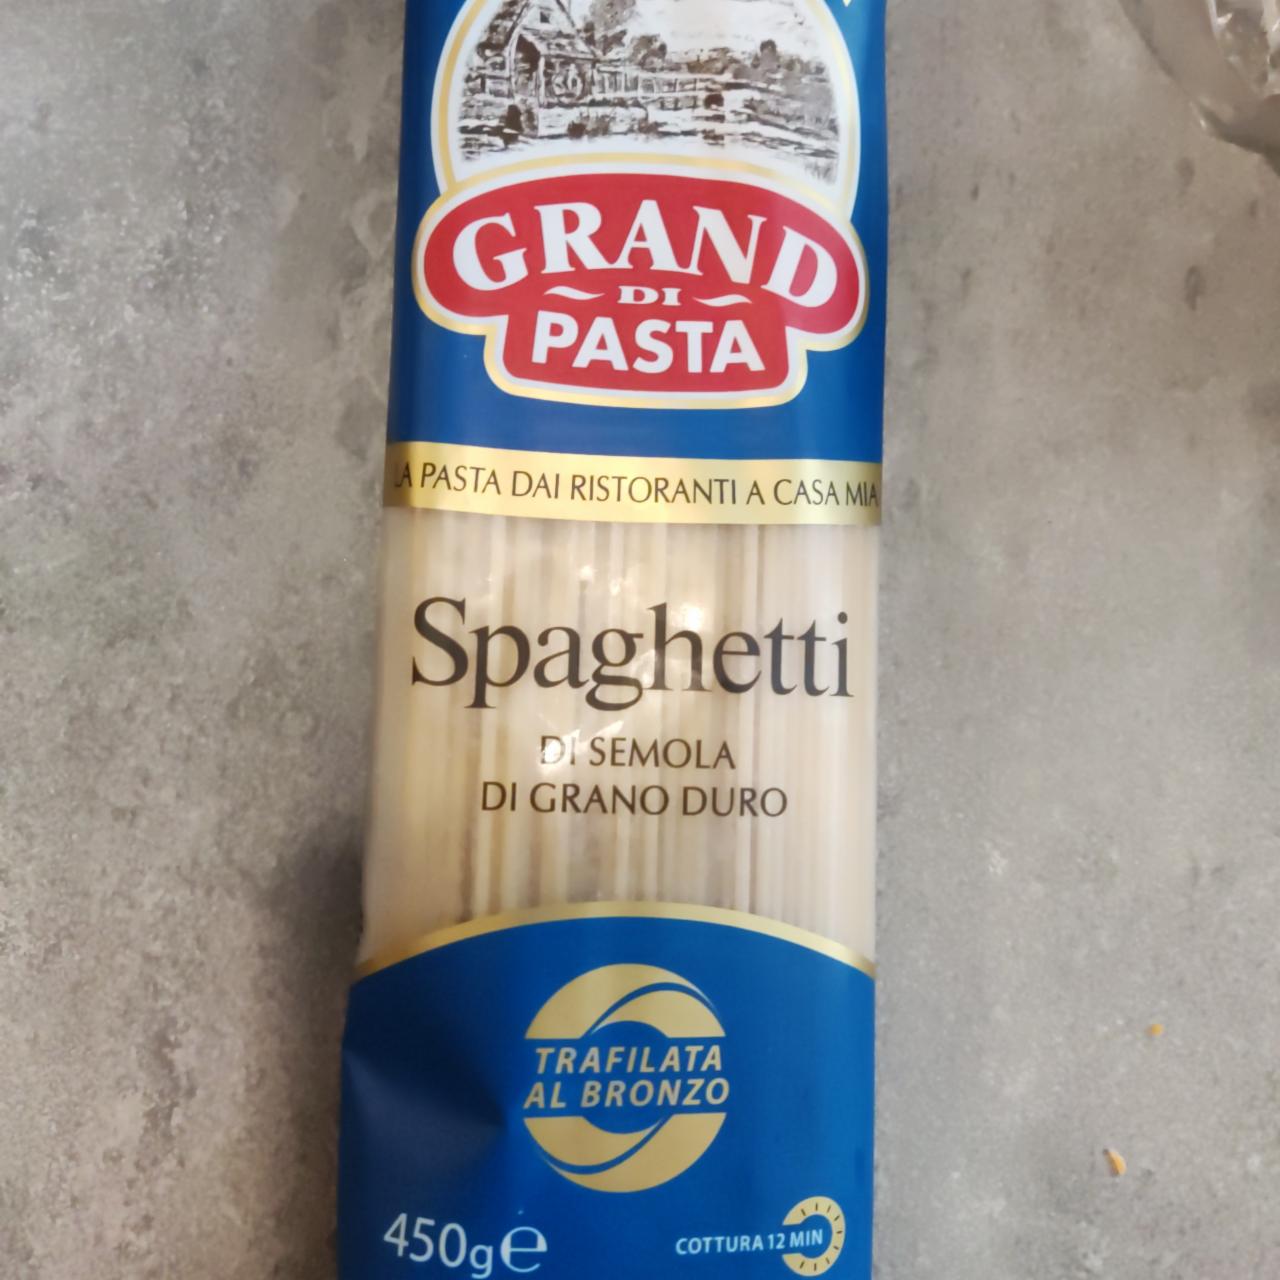 Фото - Макаронные изделия спаггети Grand di pasta